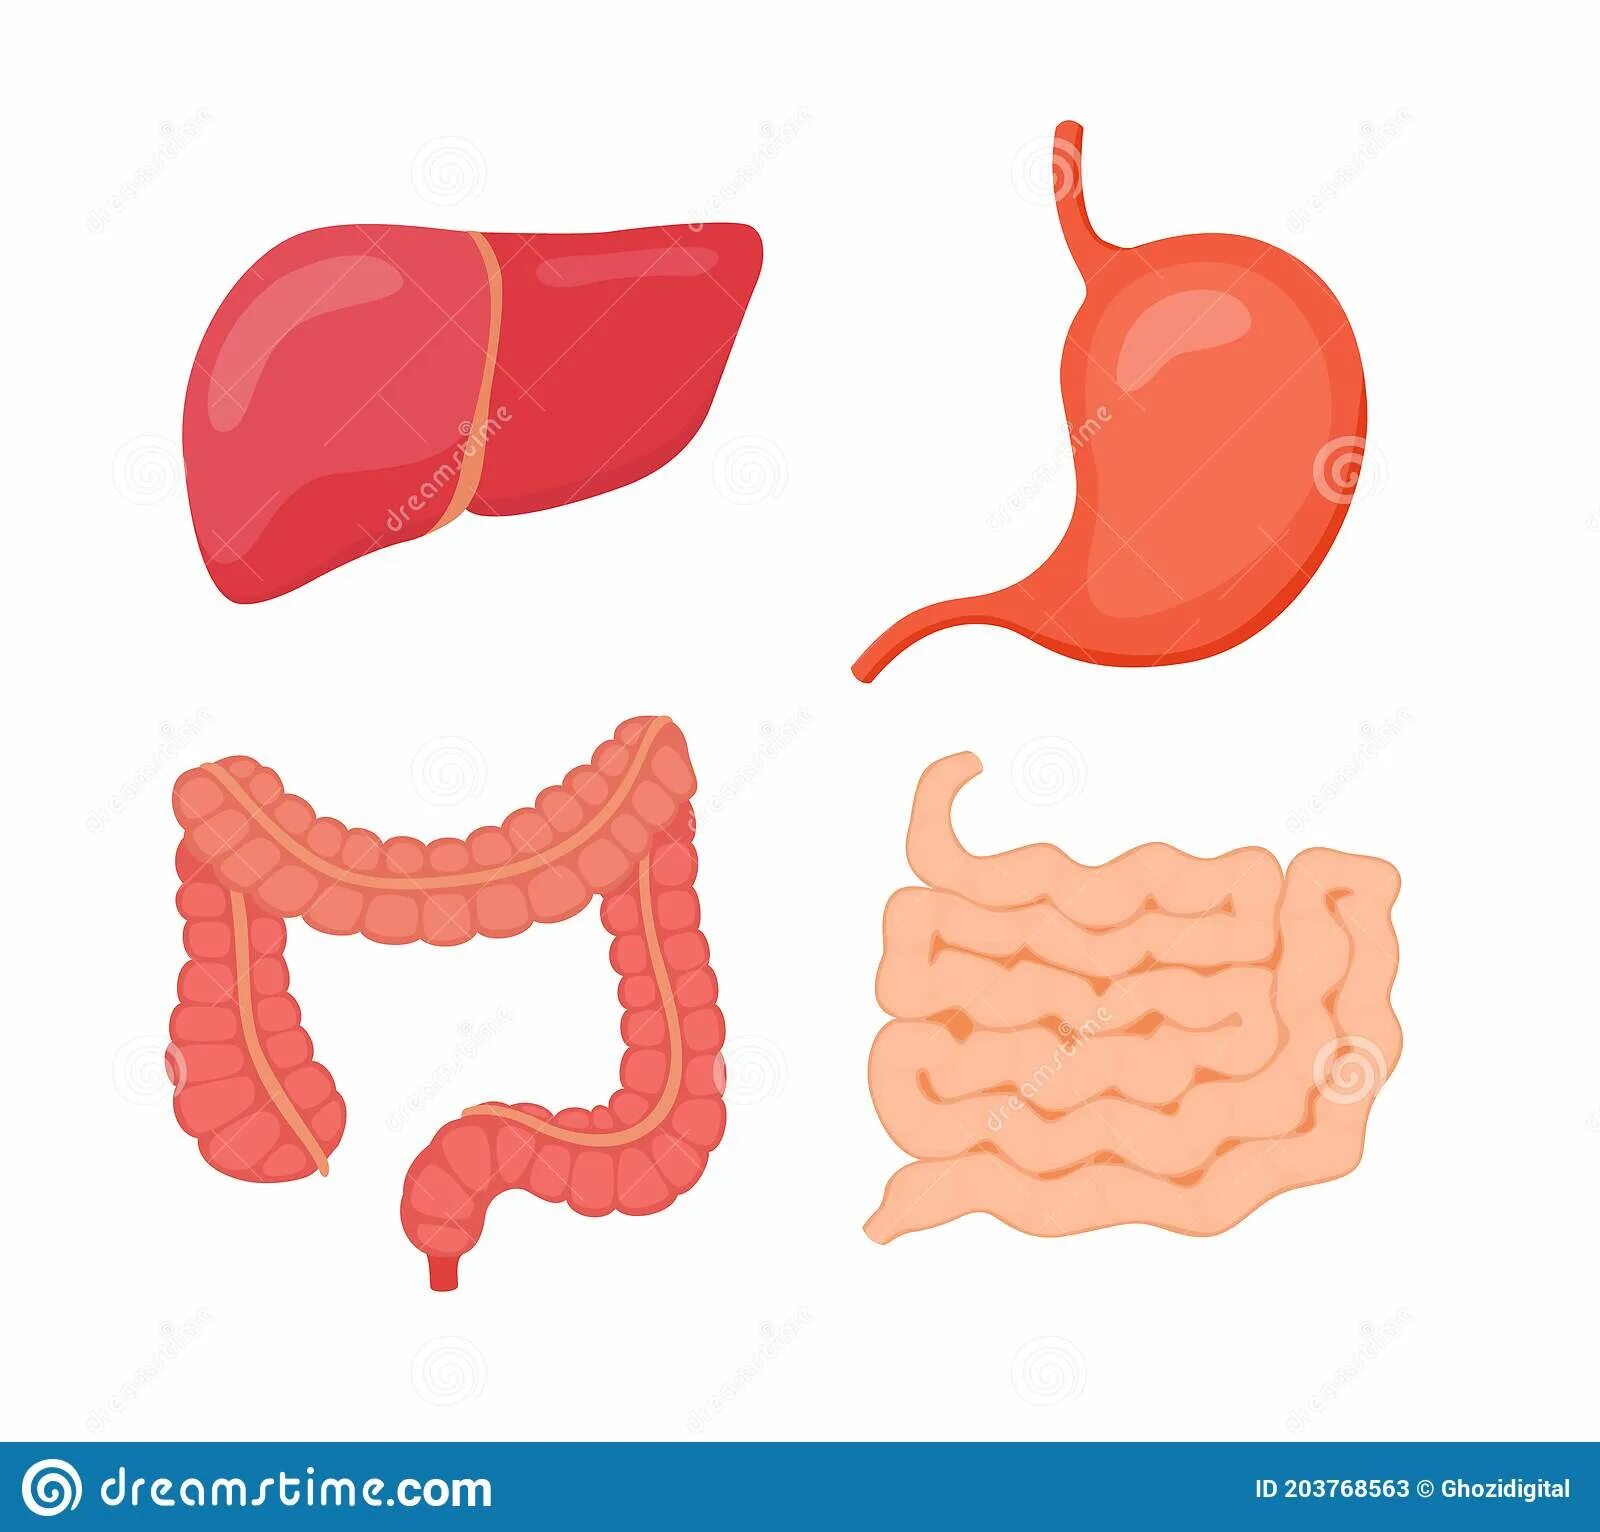 Органы желудок кишечник печень. Печень желудок кишечник. Кишечник вектор. Живот кишечник вектор.